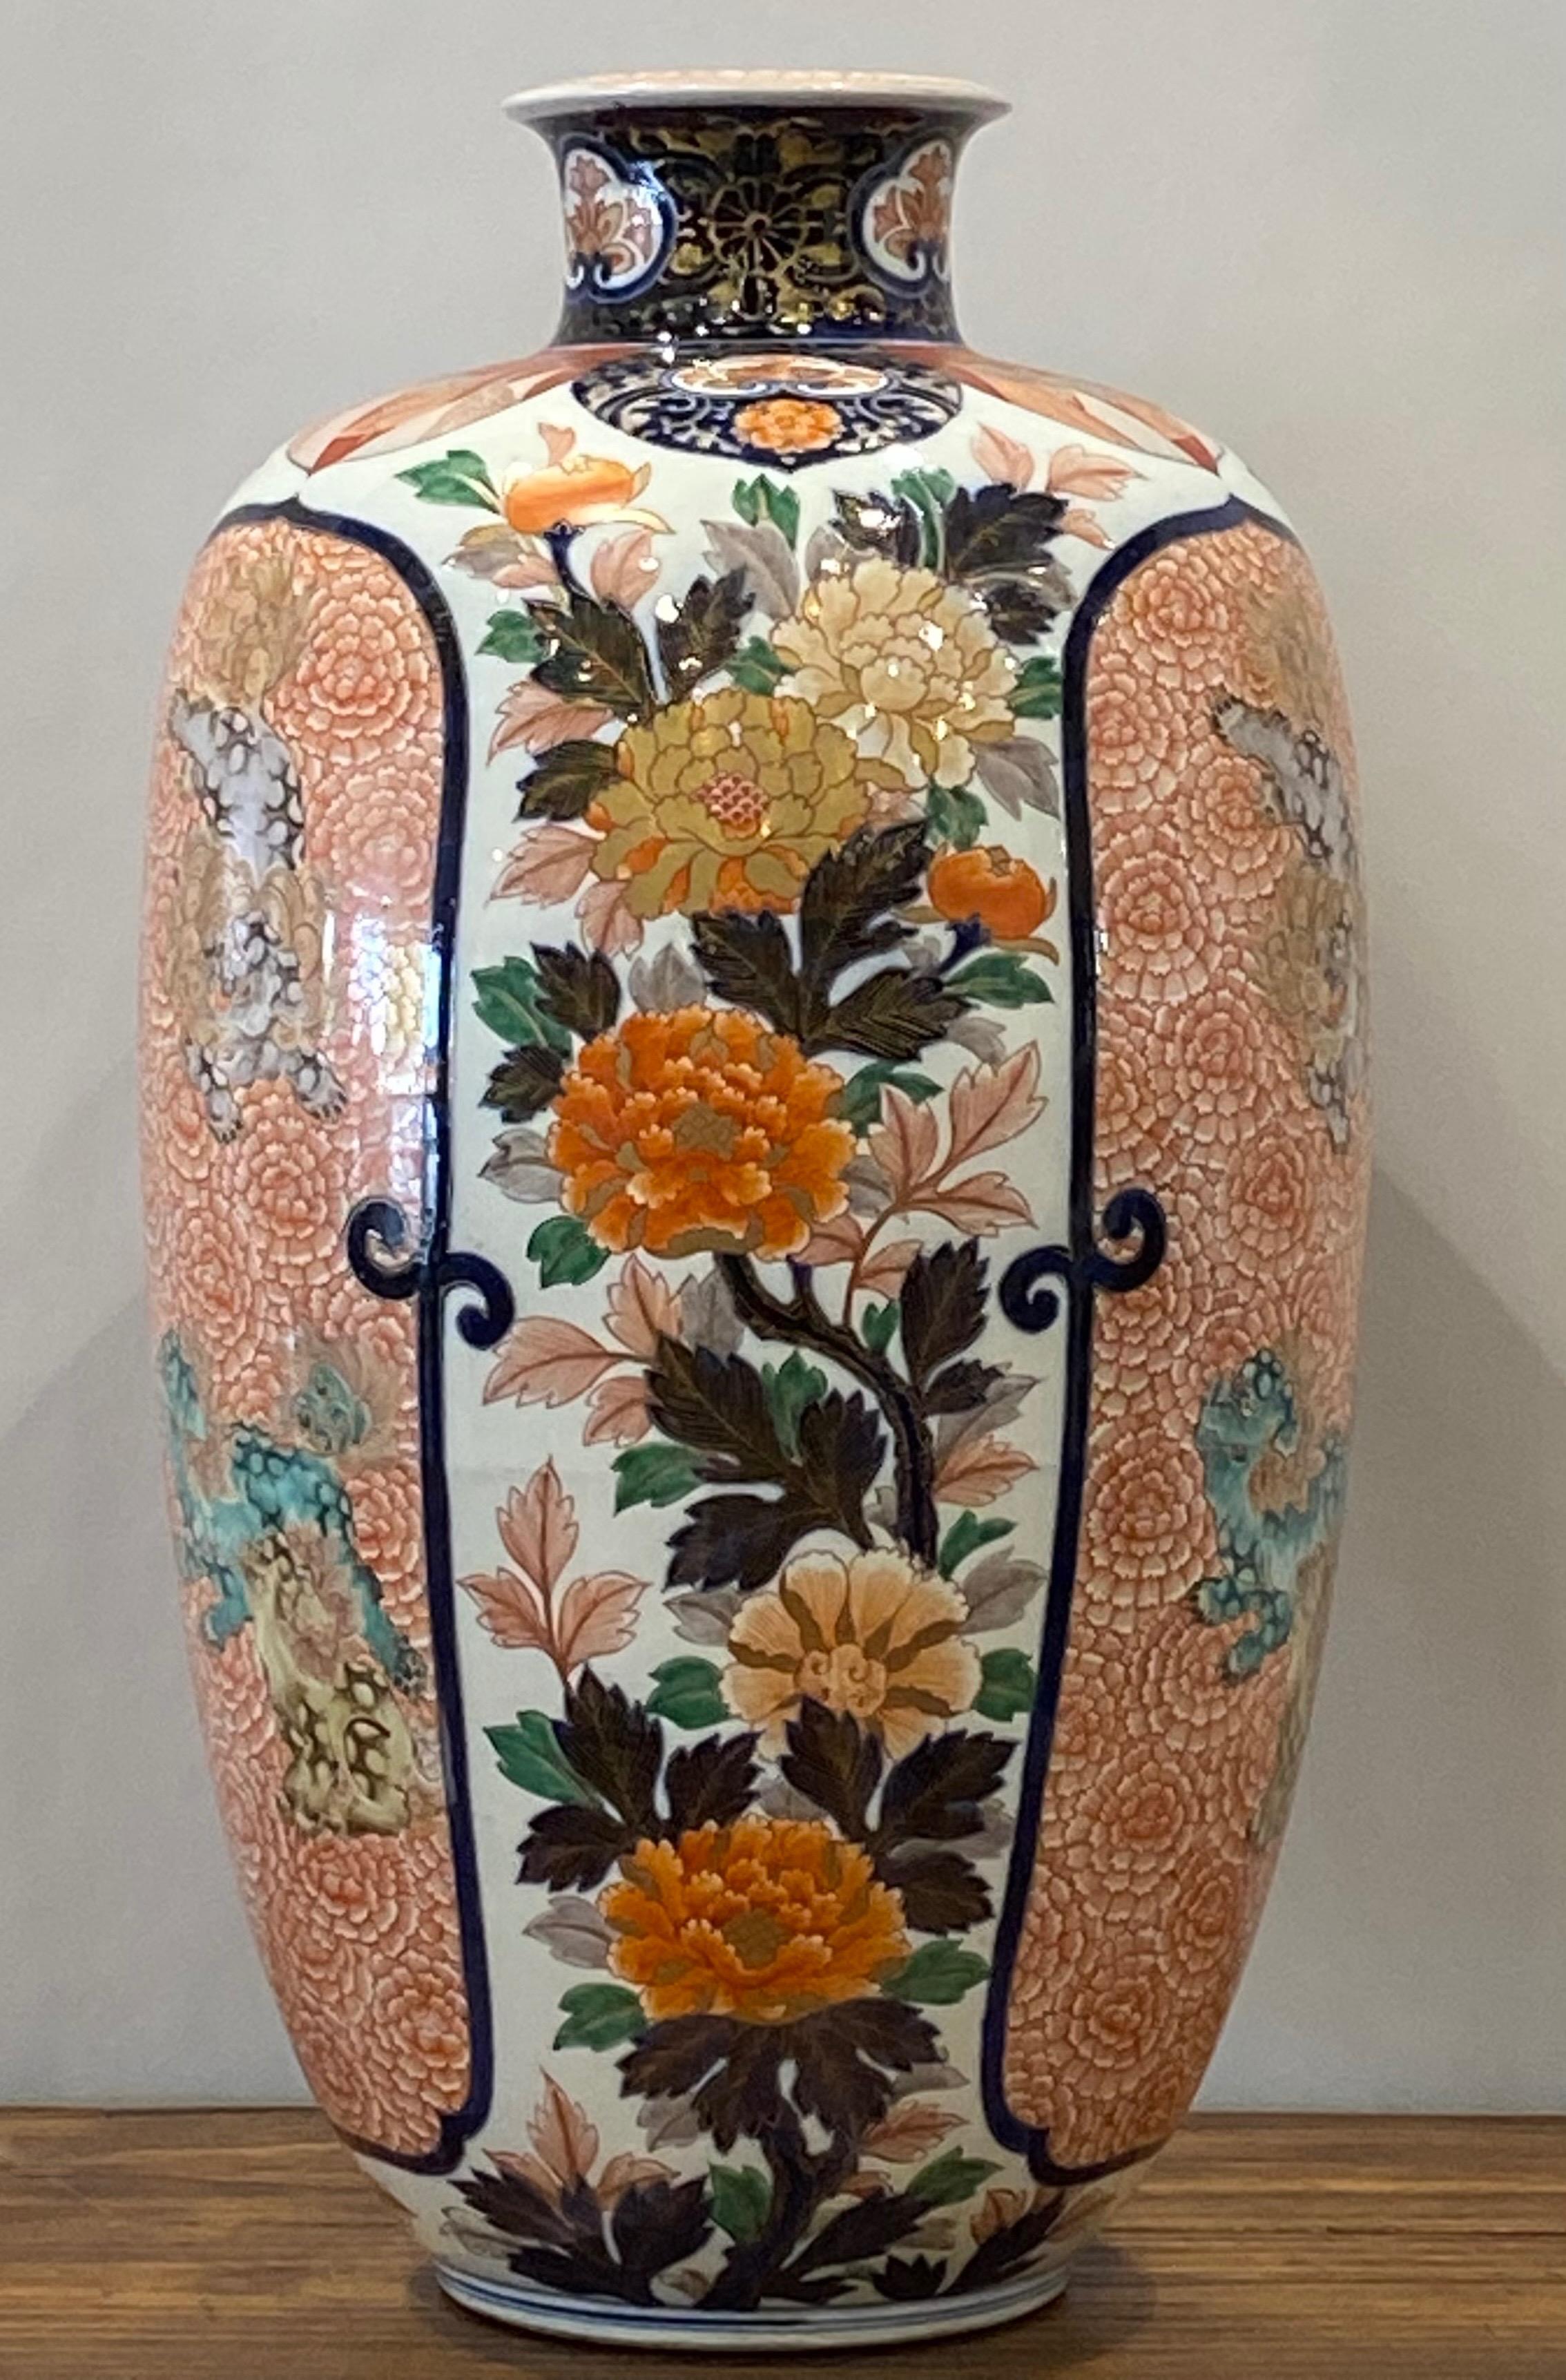 Eine große und beeindruckende Imari-Vase aus dem 19. Jahrhundert mit handgemaltem klassischem Blumenmotiv und verspielten Foo Dogs als Einlage.
Japan, Meiji-Zeit, Ende des 19. Jahrhunderts.
Exquisit gemalt, ungewöhnliche Größe, in ausgezeichnetem